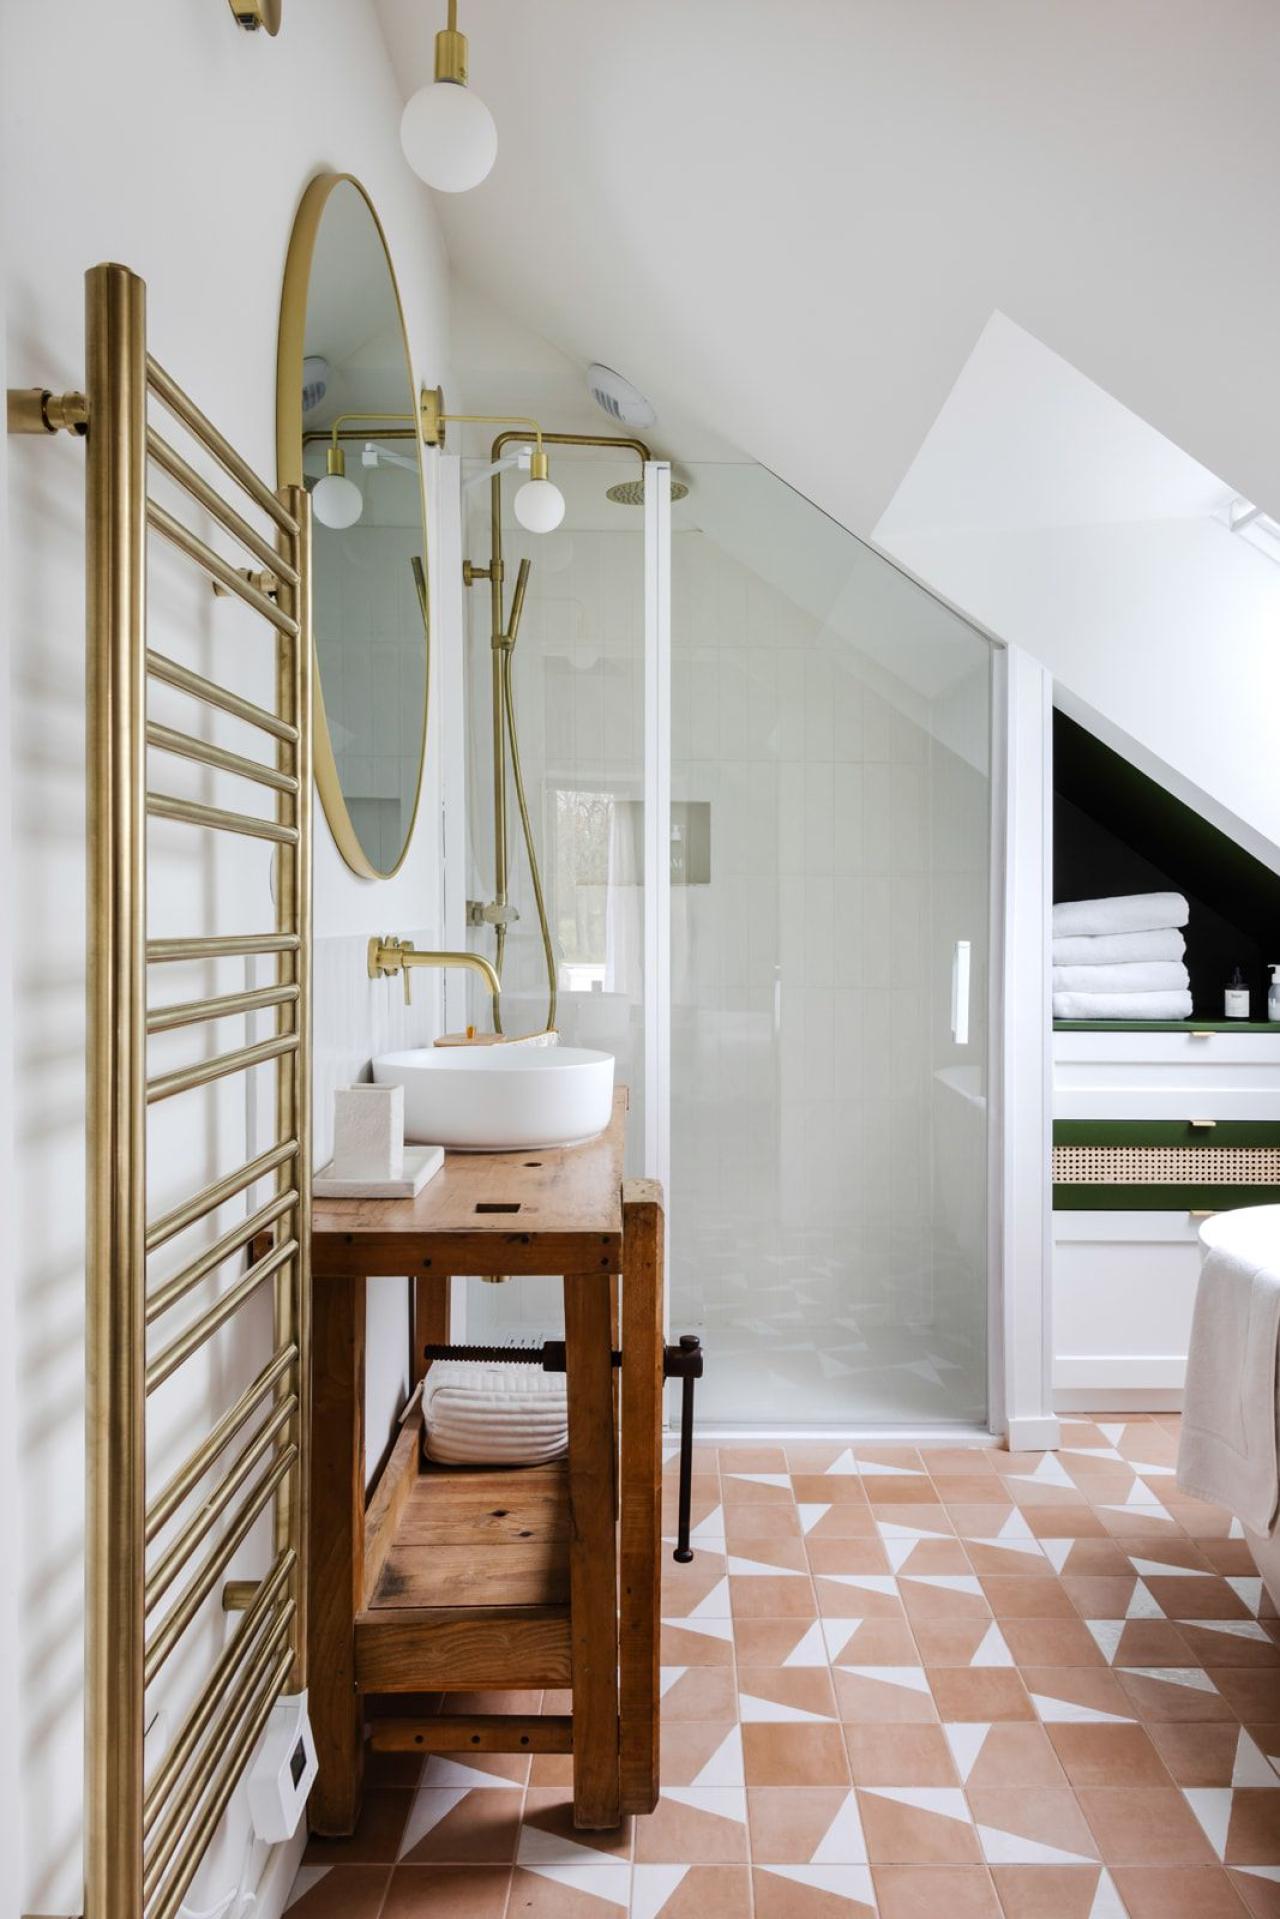 Badezimmermöbel in Olive und Blanc pur unter dem Dachboden